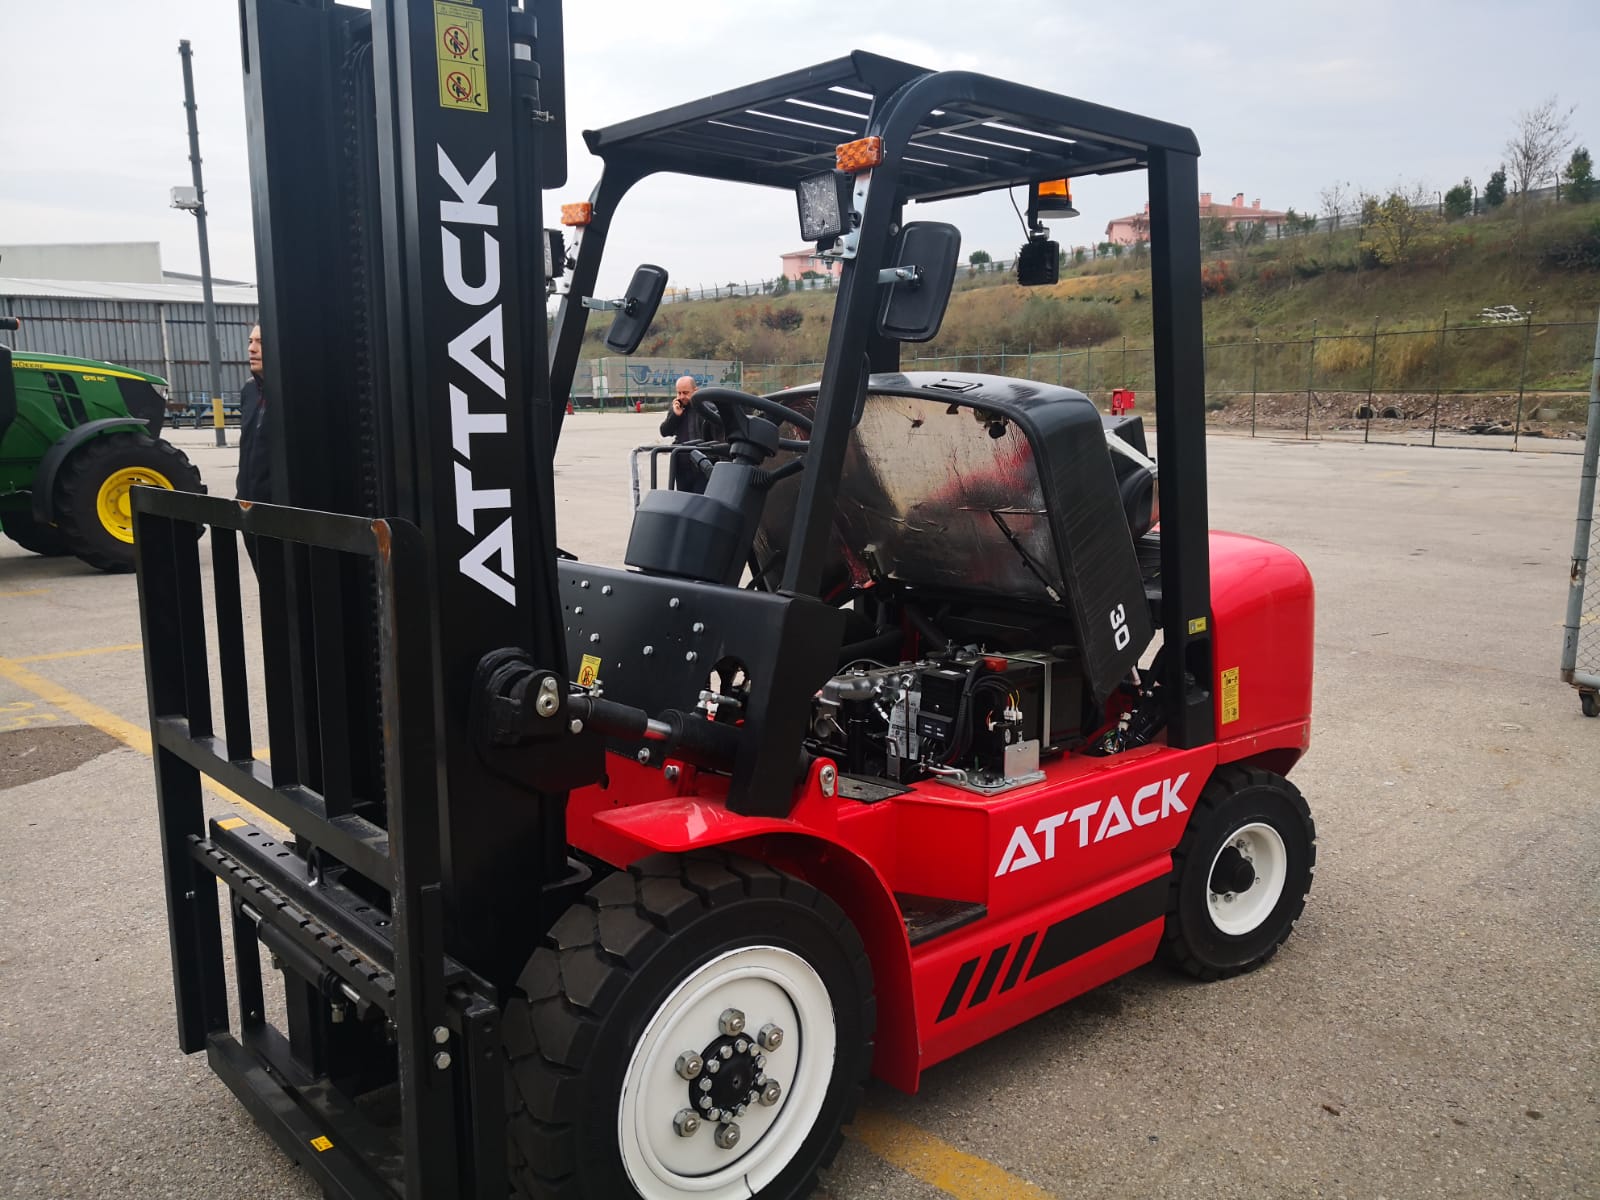  Attack Forklift Yedek Parça Satışı